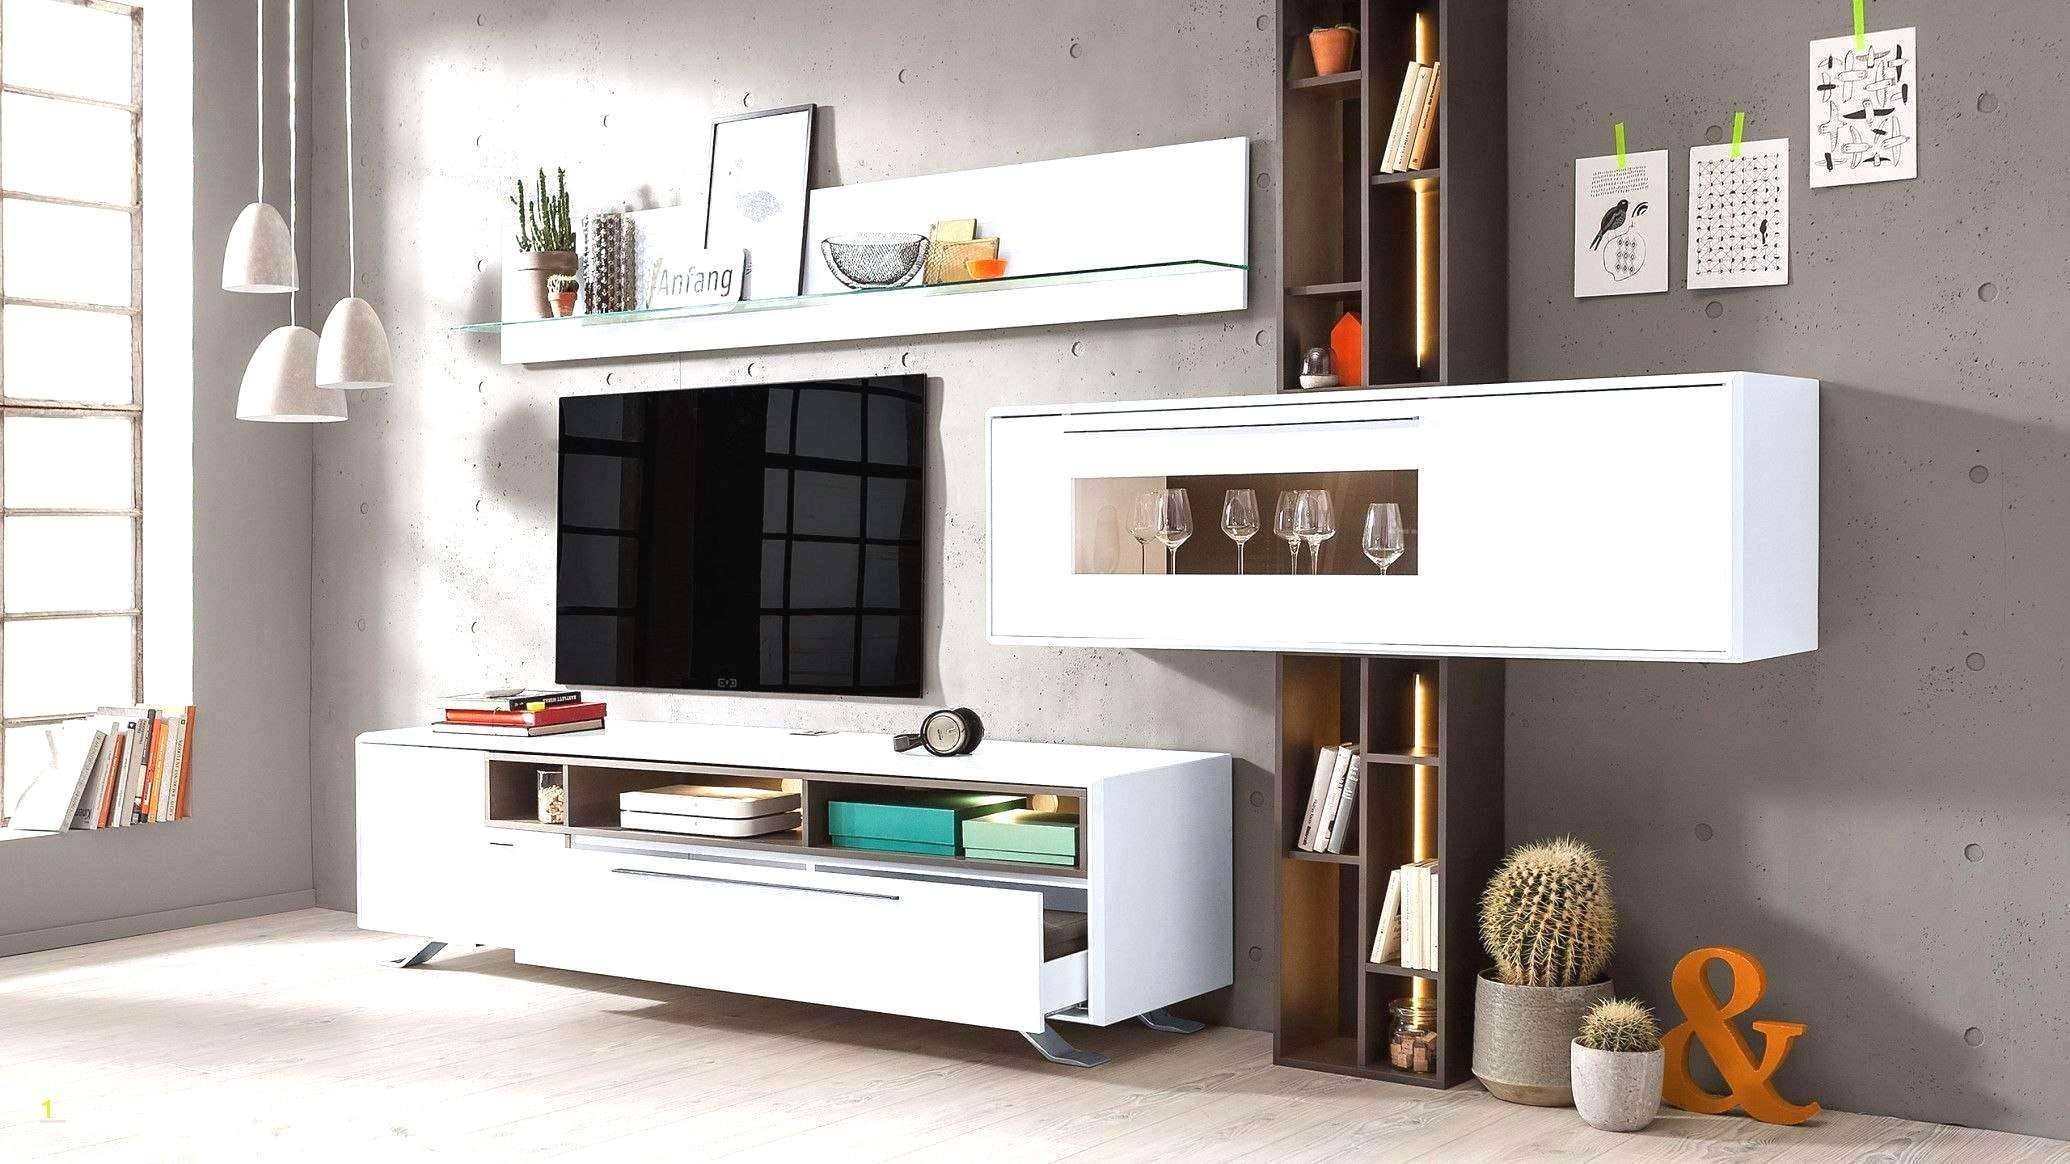 Deko Mit Holz Selber Machen Elegant Luxury Deko Ideen Selbermachen Wohnzimmer Concept